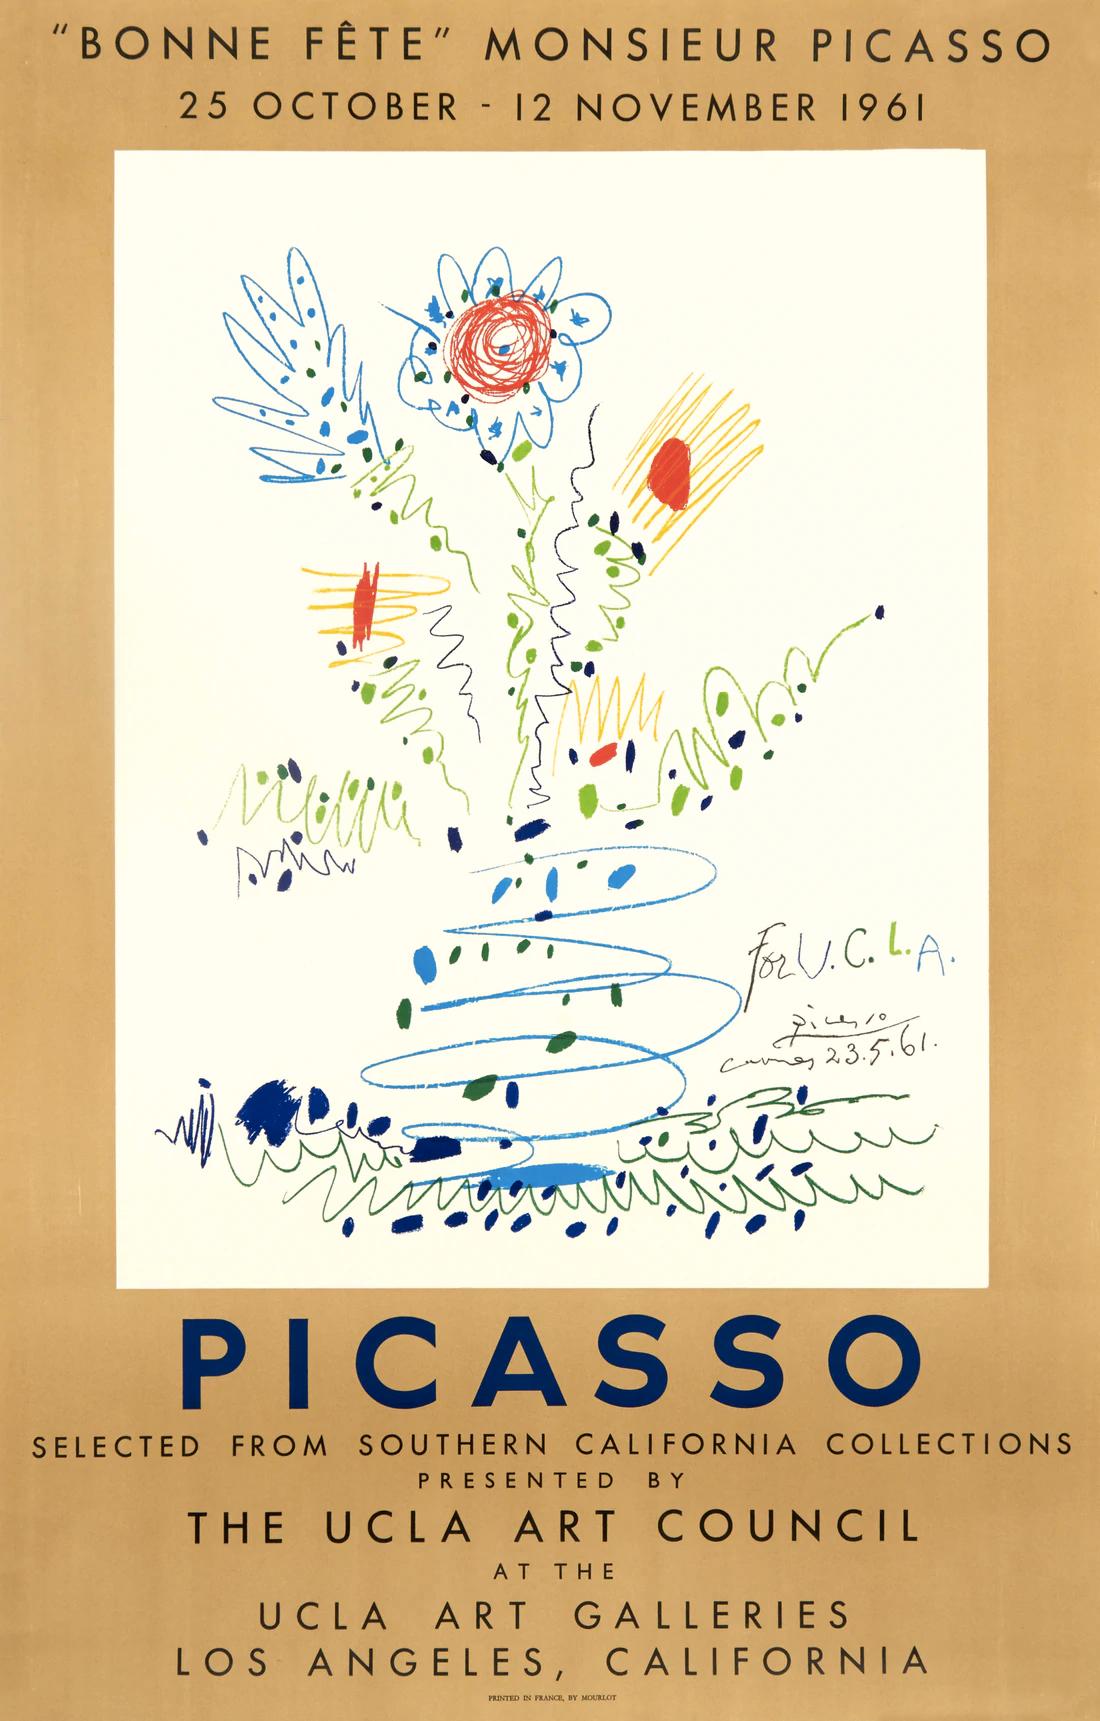 Künstler: Pablo Picasso

Medium: Original Lithografie-Plakat, 1961

Abmessungen: 38.75 x 25 Zoll, 98,4 x 63,5 cm

Klassisches Posterpapier - Perfekter Zustand A+

Dieses skurrile Ausstellungsplakat war ein Originalentwurf von Pablo Picasso für die